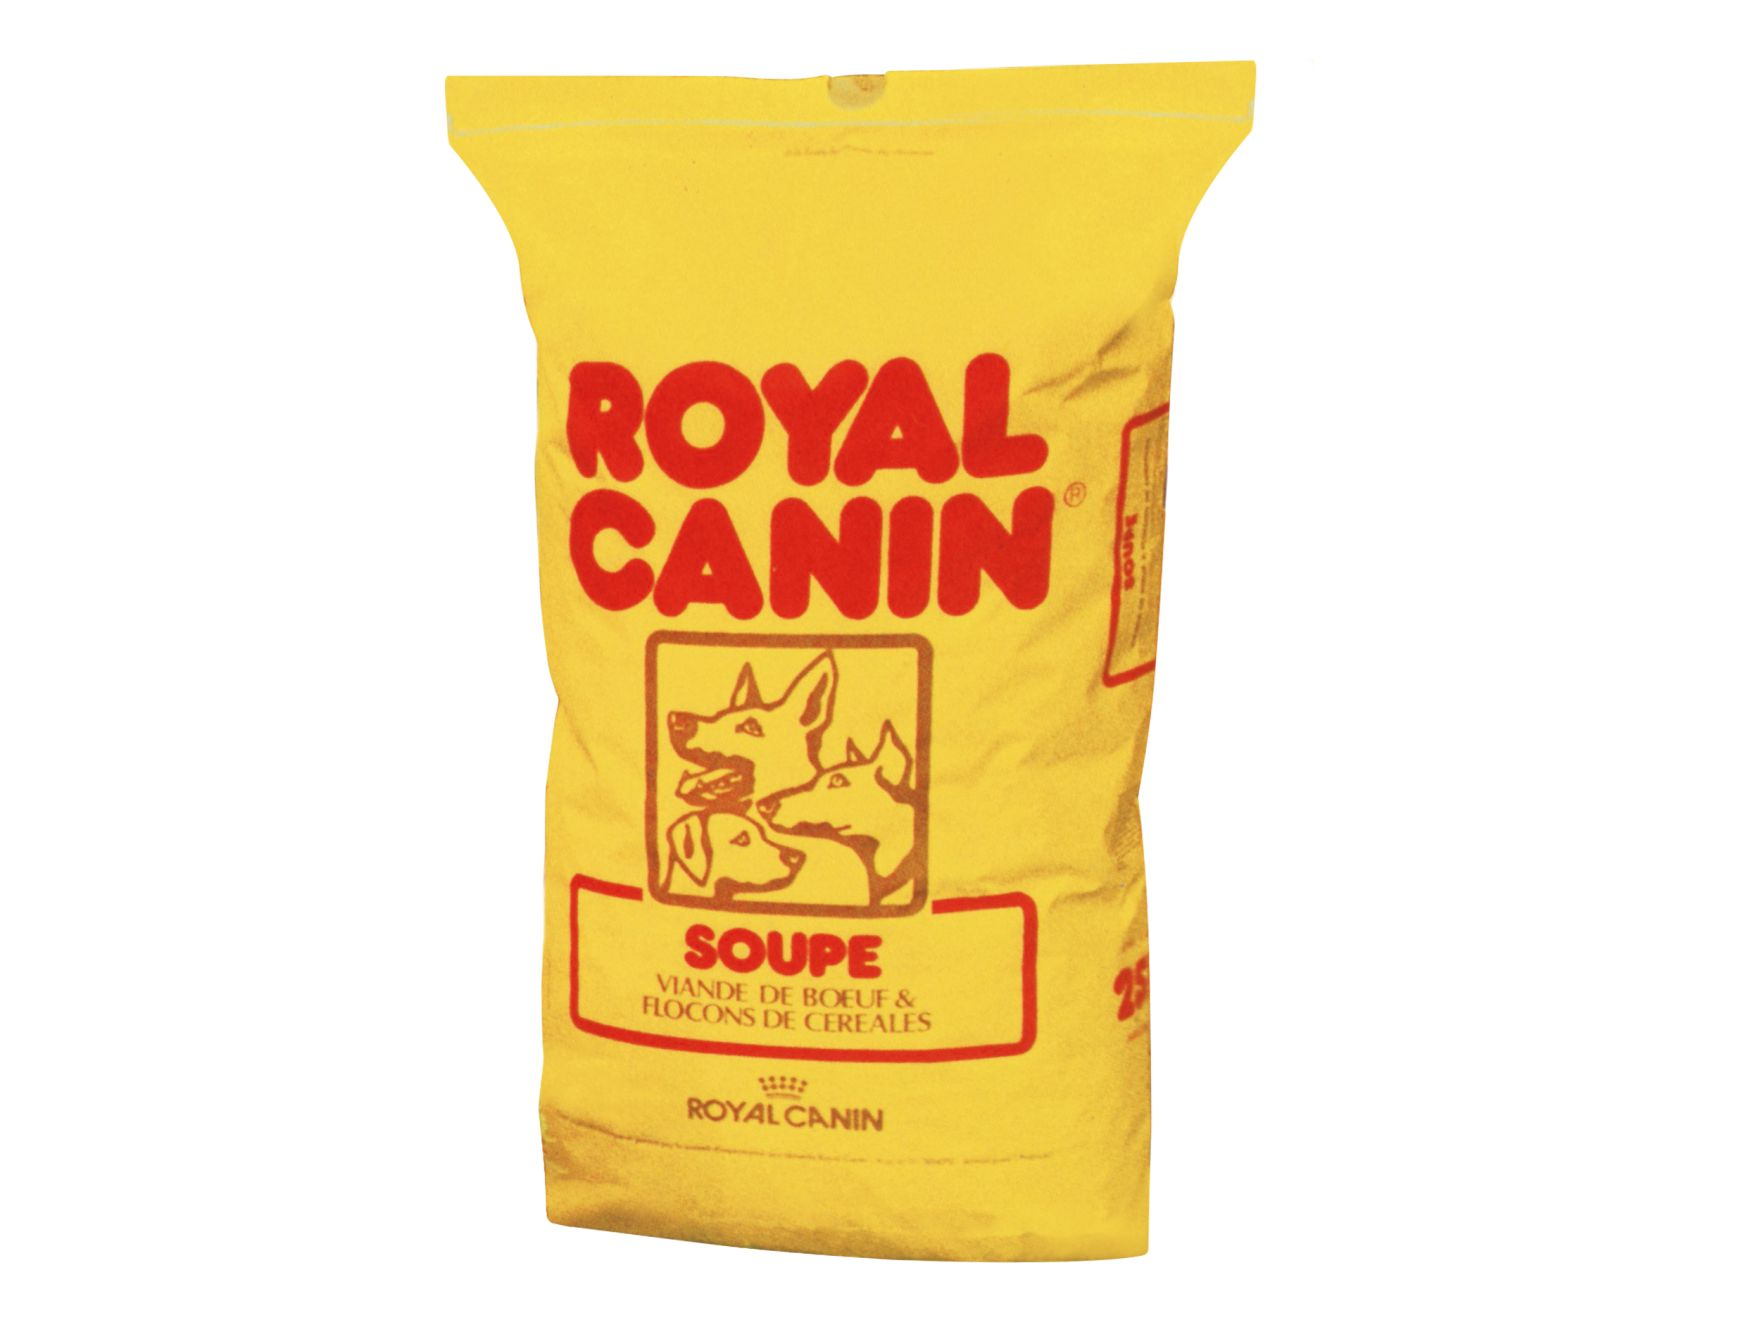 Royal Canin Soupe Jaune product packshot